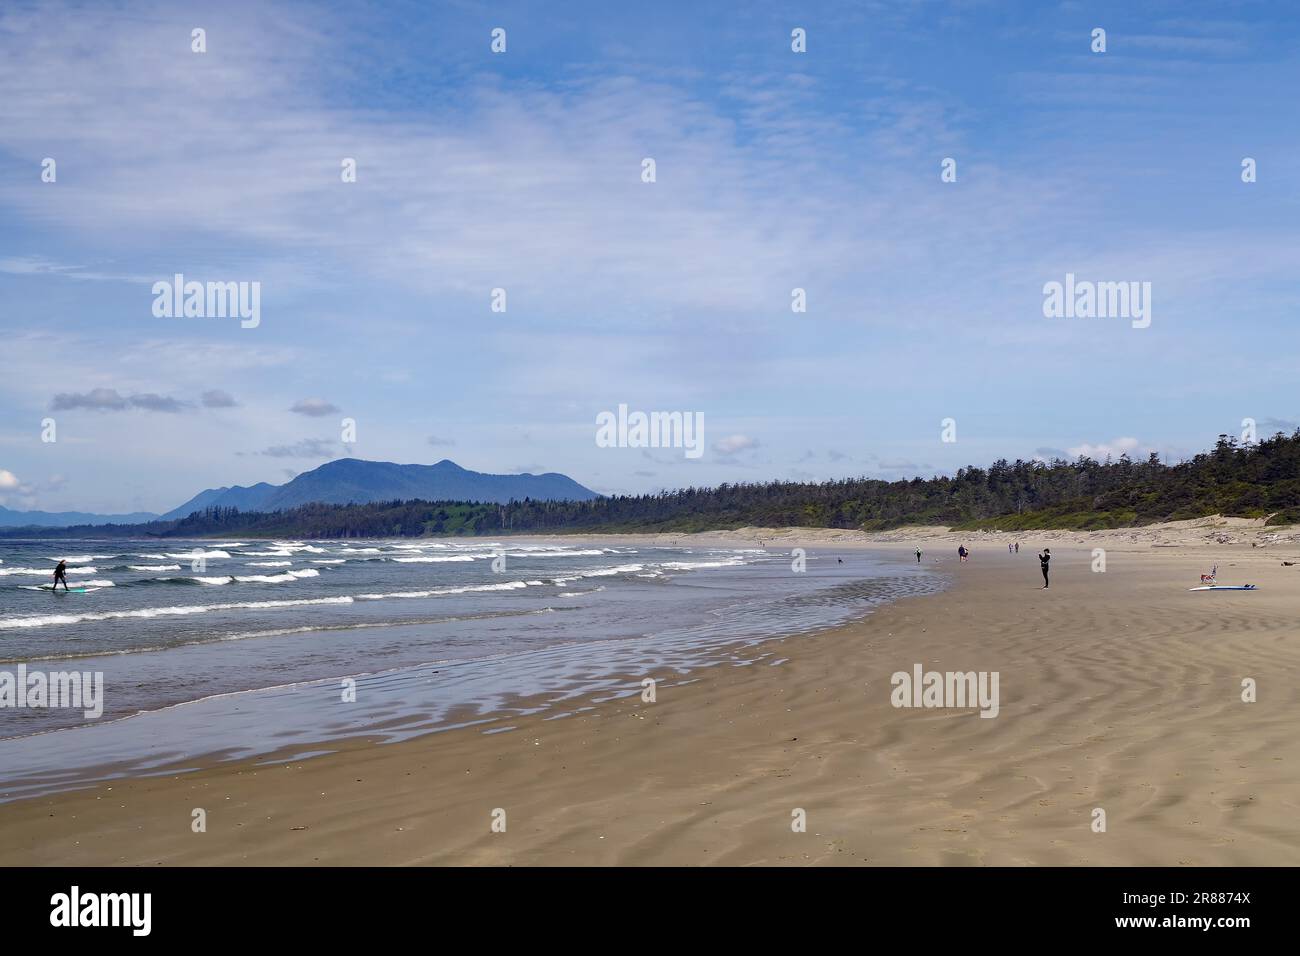 Longue plage de sable avec peu de personnes, Tofino, forêt vierge, parc national, Pacifique, Île de Vancouver, Colombie-Britannique, Canada Banque D'Images